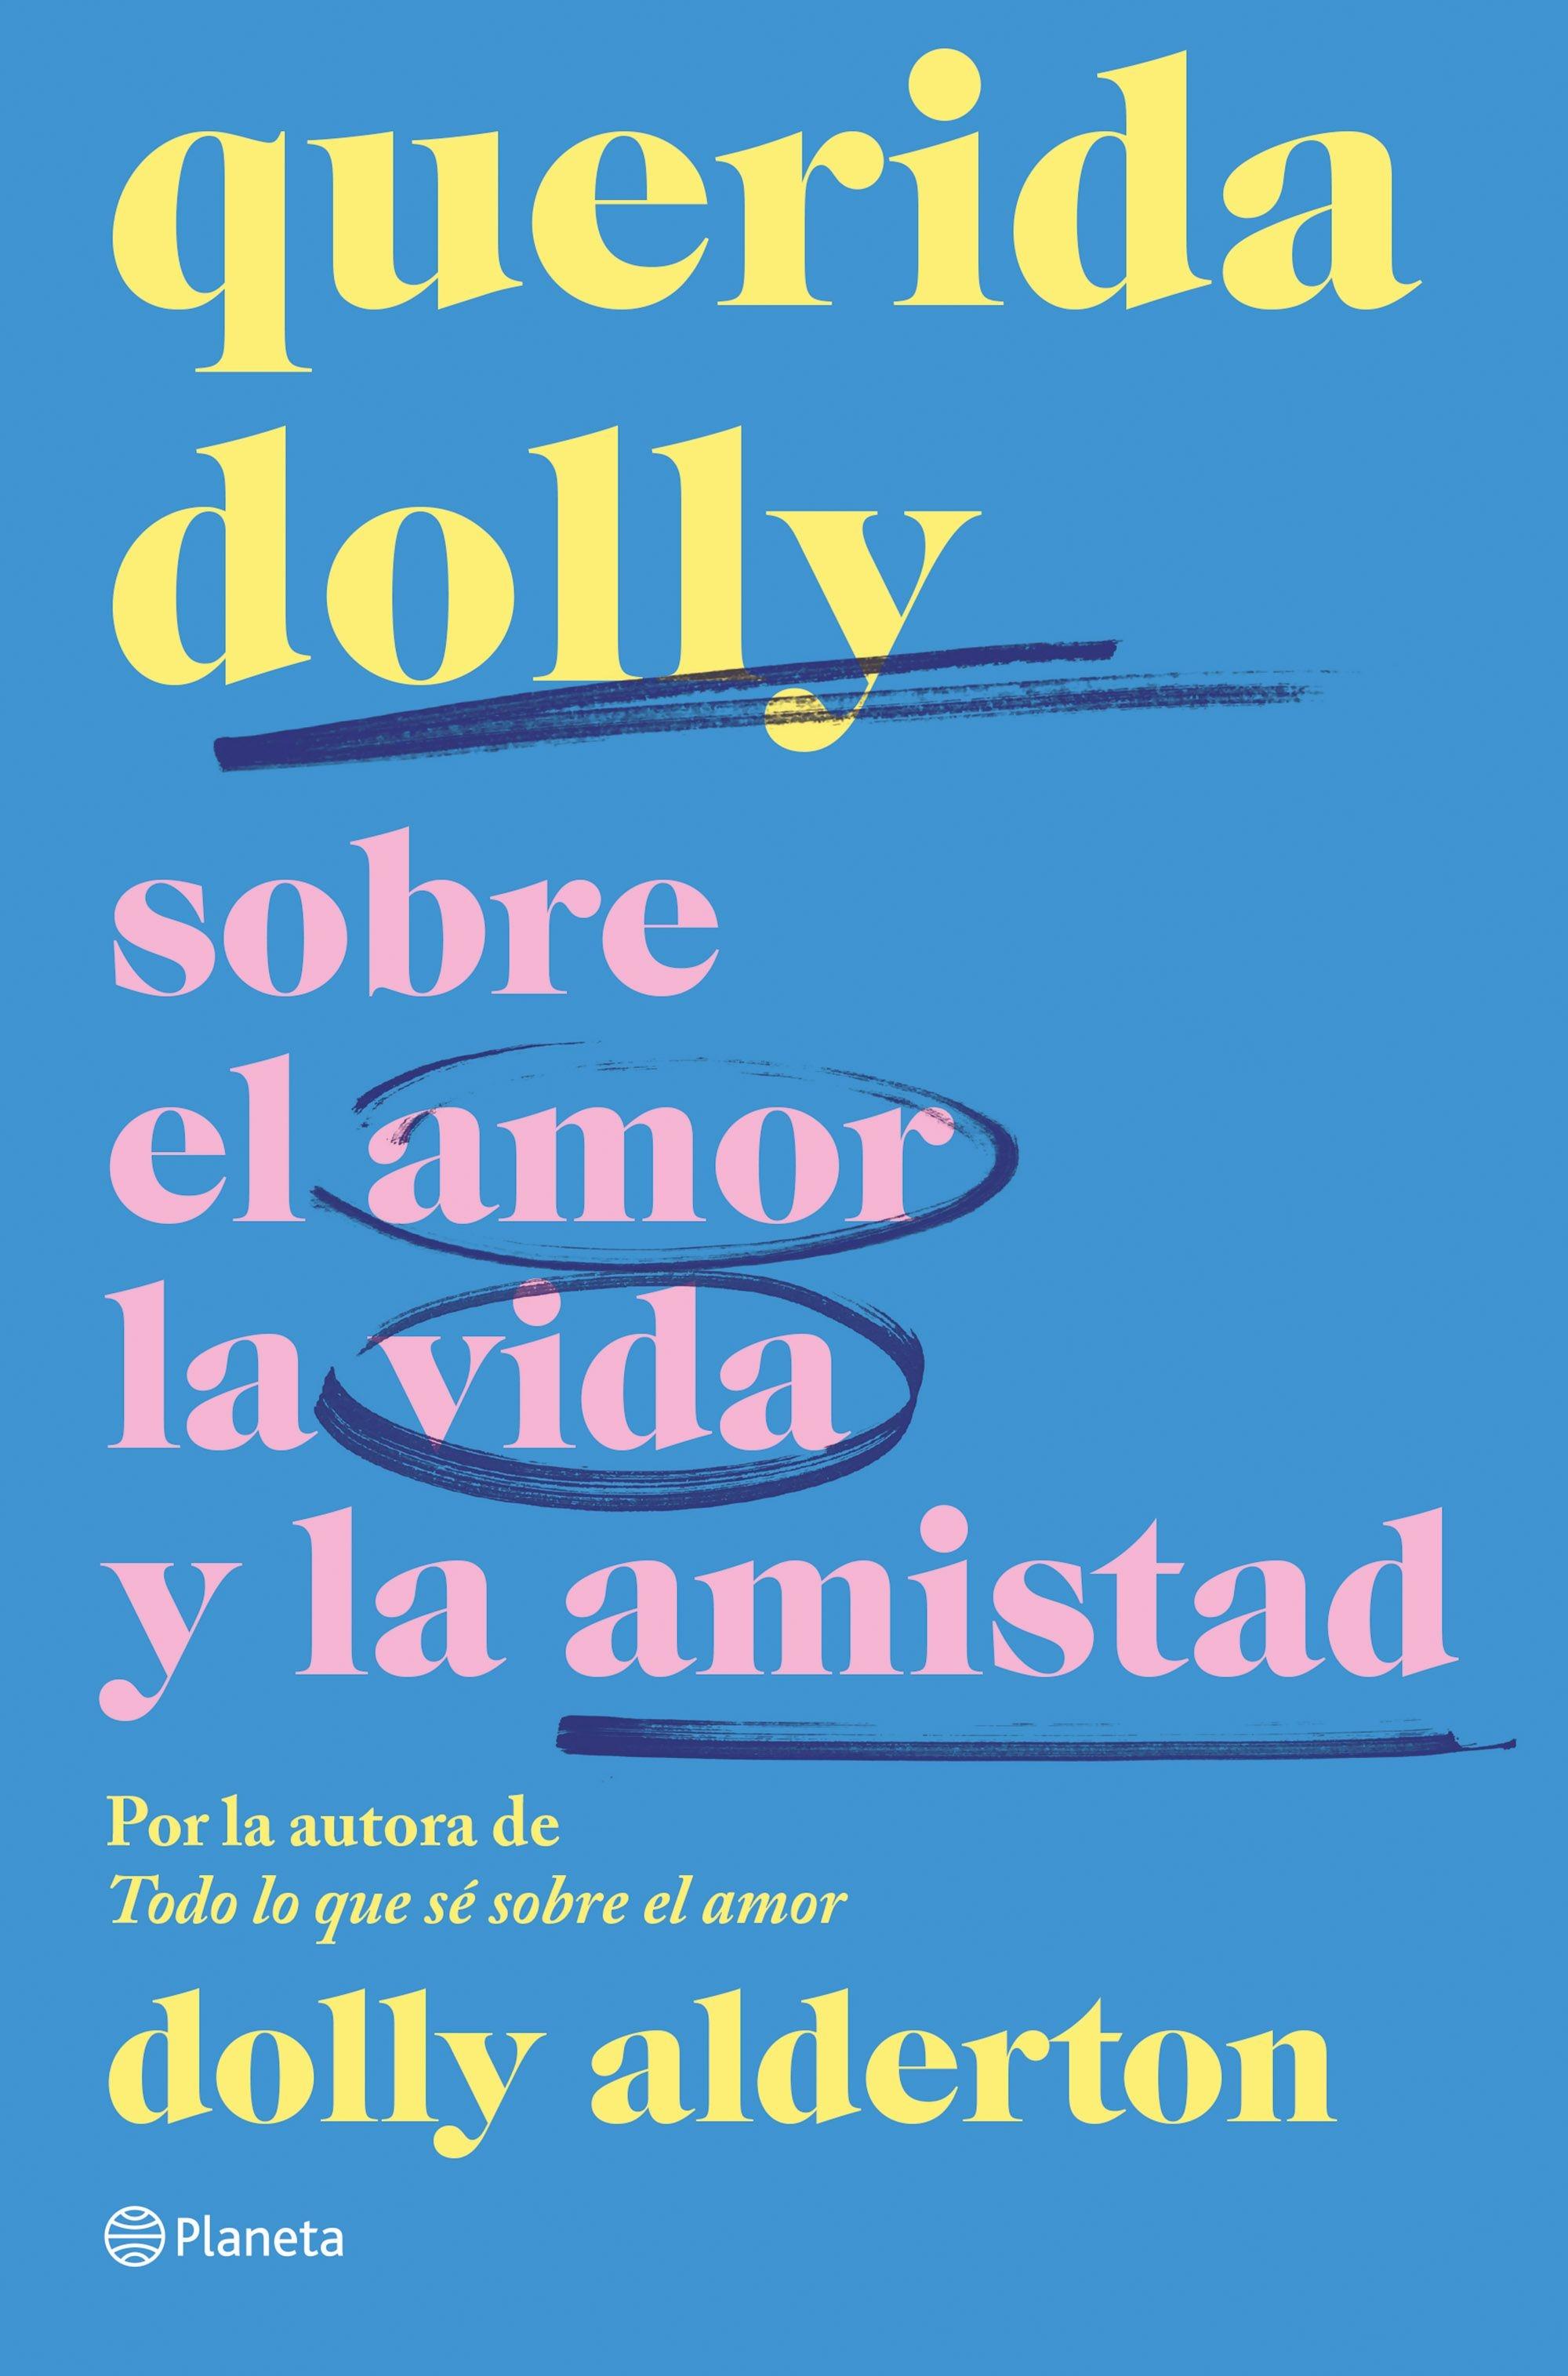 Querida Dolly "Sobre al Amor, la Vida y la Amistad"